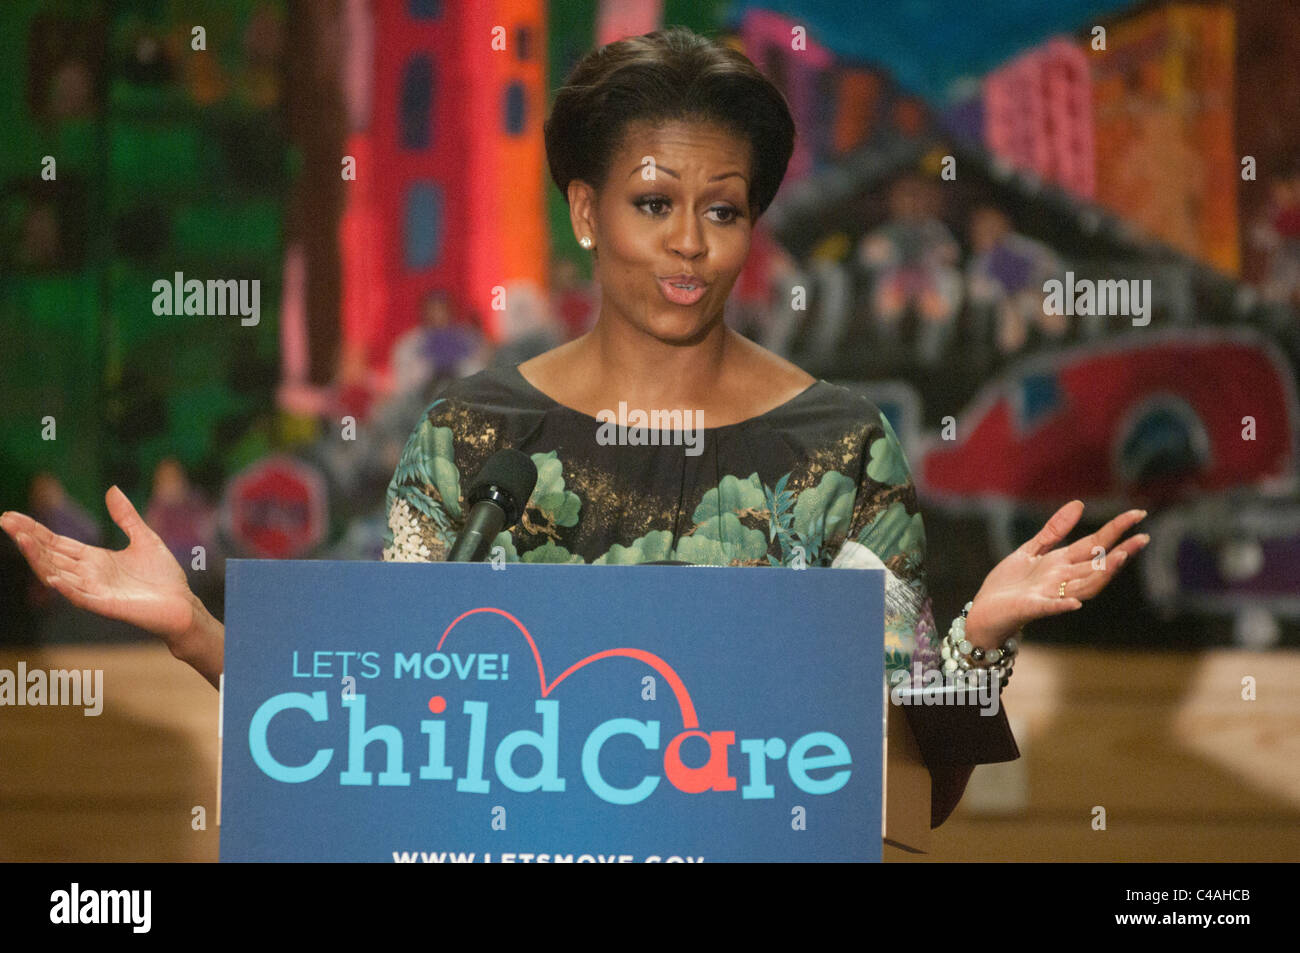 La Première Dame Michelle Obama dévoile vous permet de bouger ! Les soins aux enfants, un nouvel effort pour travailler avec les fournisseurs de services de garderie. Banque D'Images